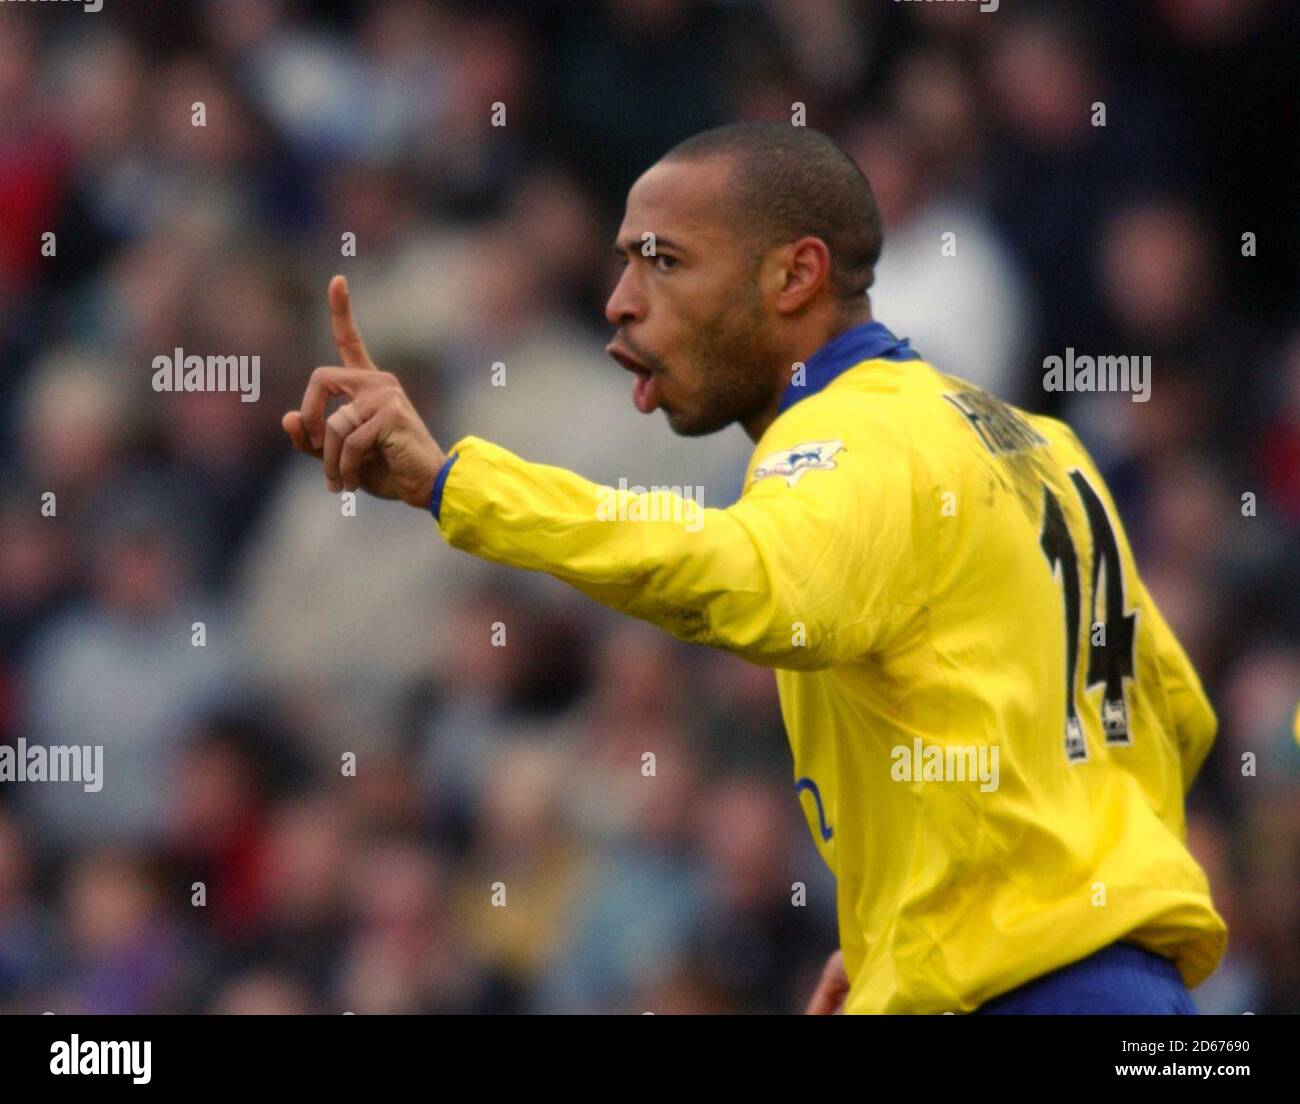 Thierry Henry von Arsenal zeigt mit dem Finger auf Blackburns Craig Short (Nicht im Bild), nachdem sie ihr Eröffnungstreffer erzielt haben Stockfoto